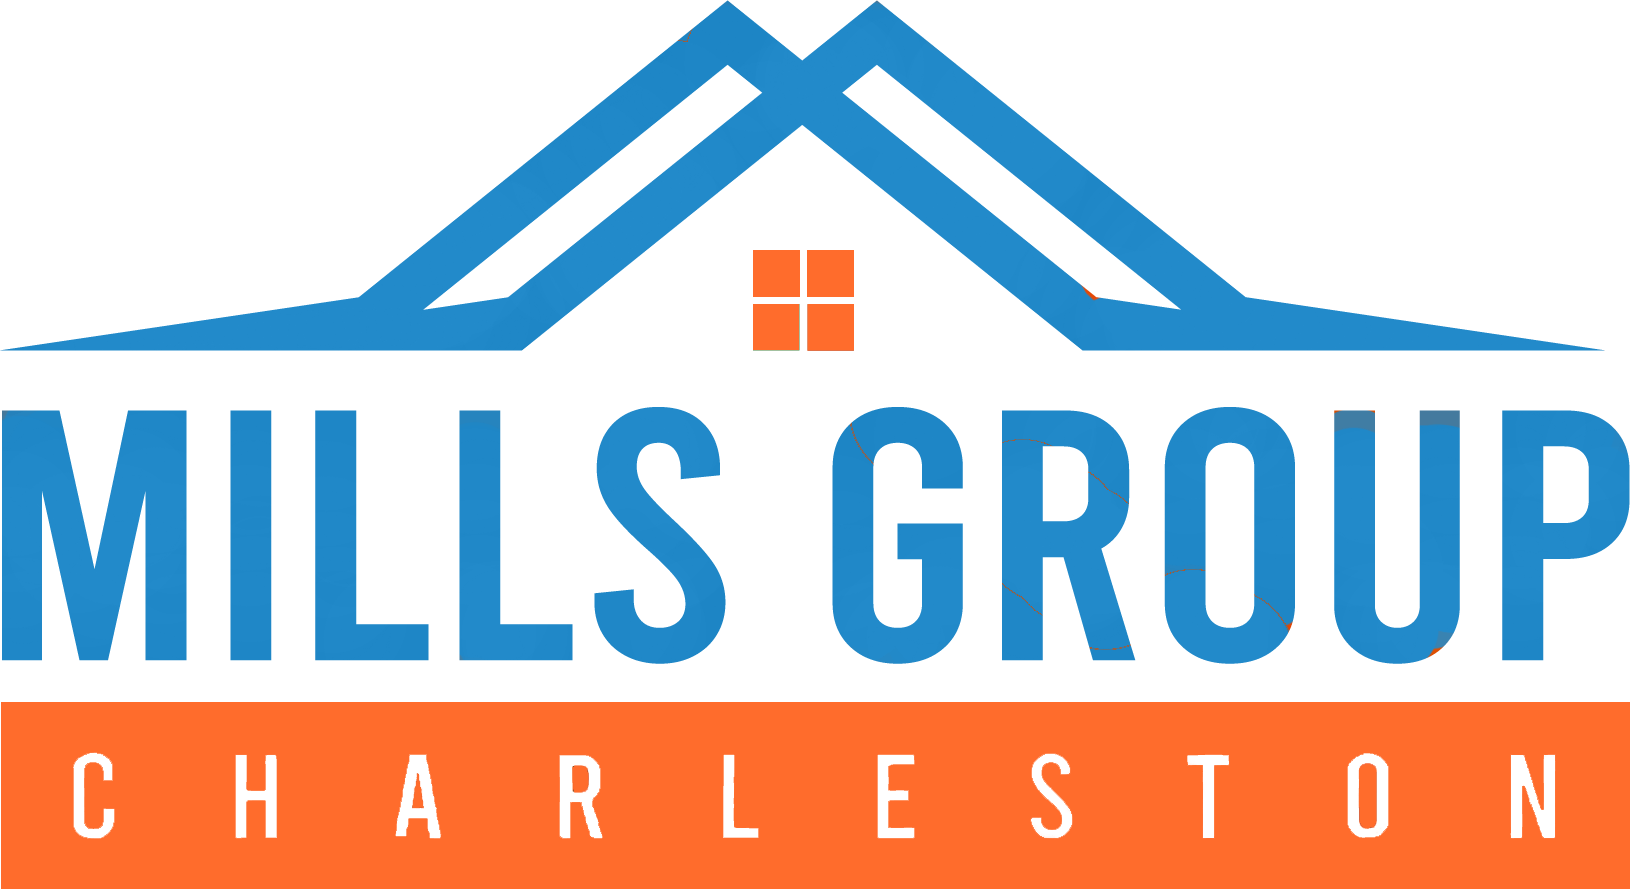 Mills Group Charleston Logo